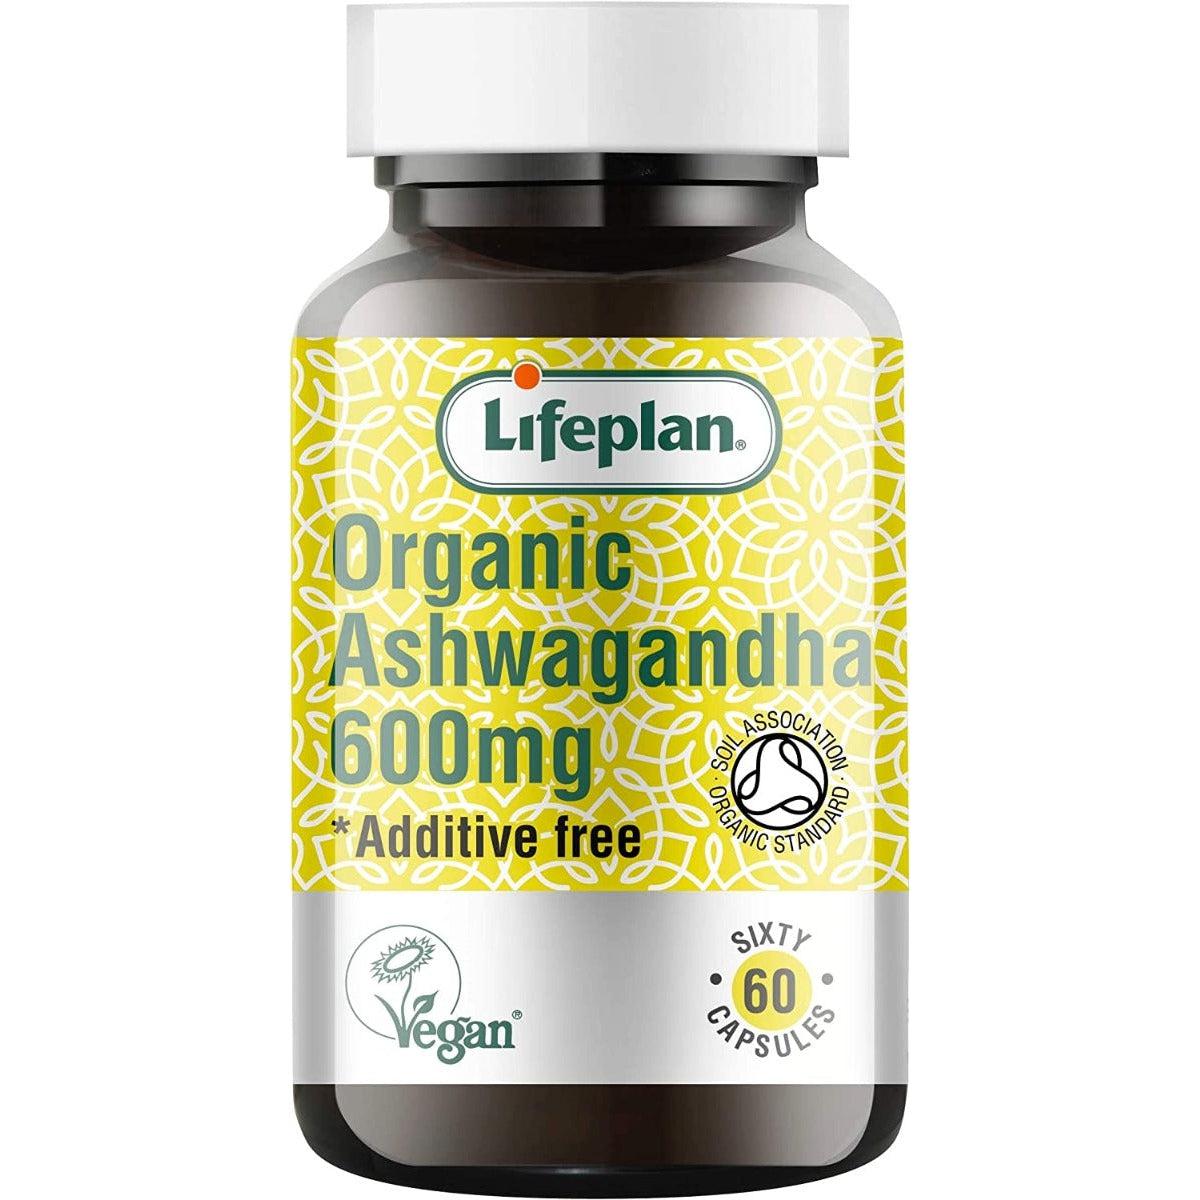 Lifeplan Organic Ashwagandha 600mg Additive Free Vegan 60 Capsules